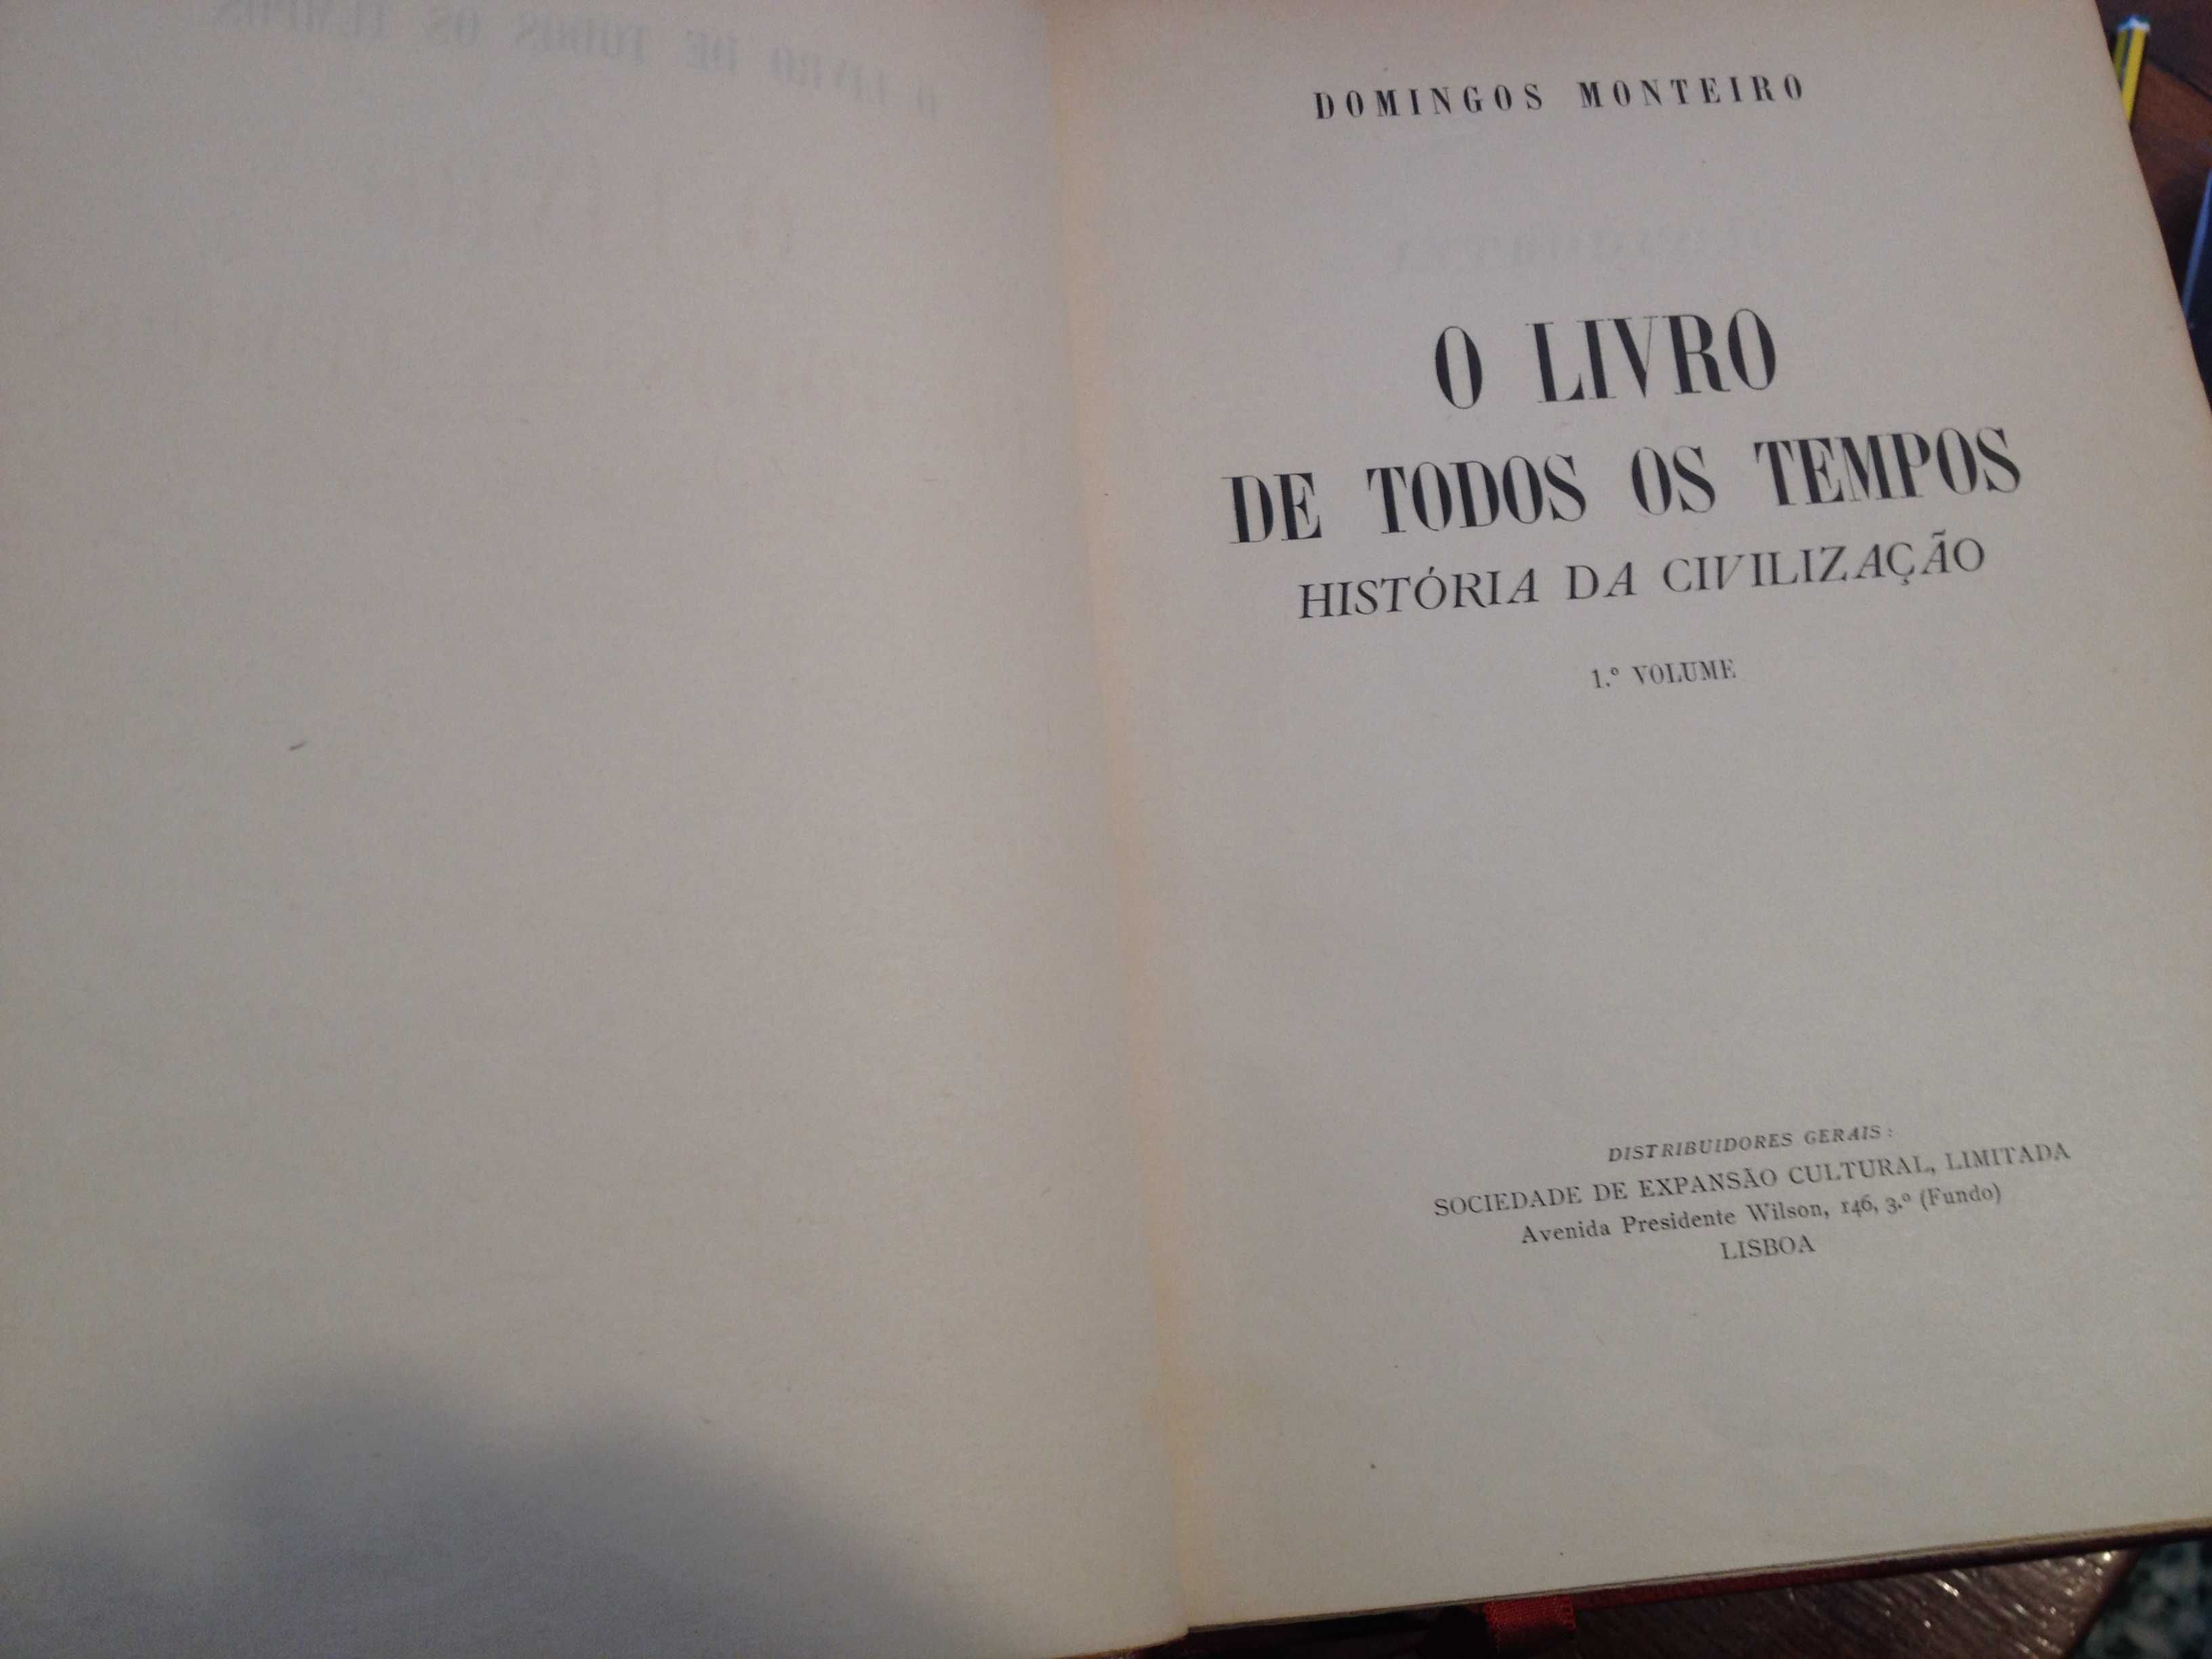 Domingos Monteiro - O livro de todos os tempos (3 vols.)